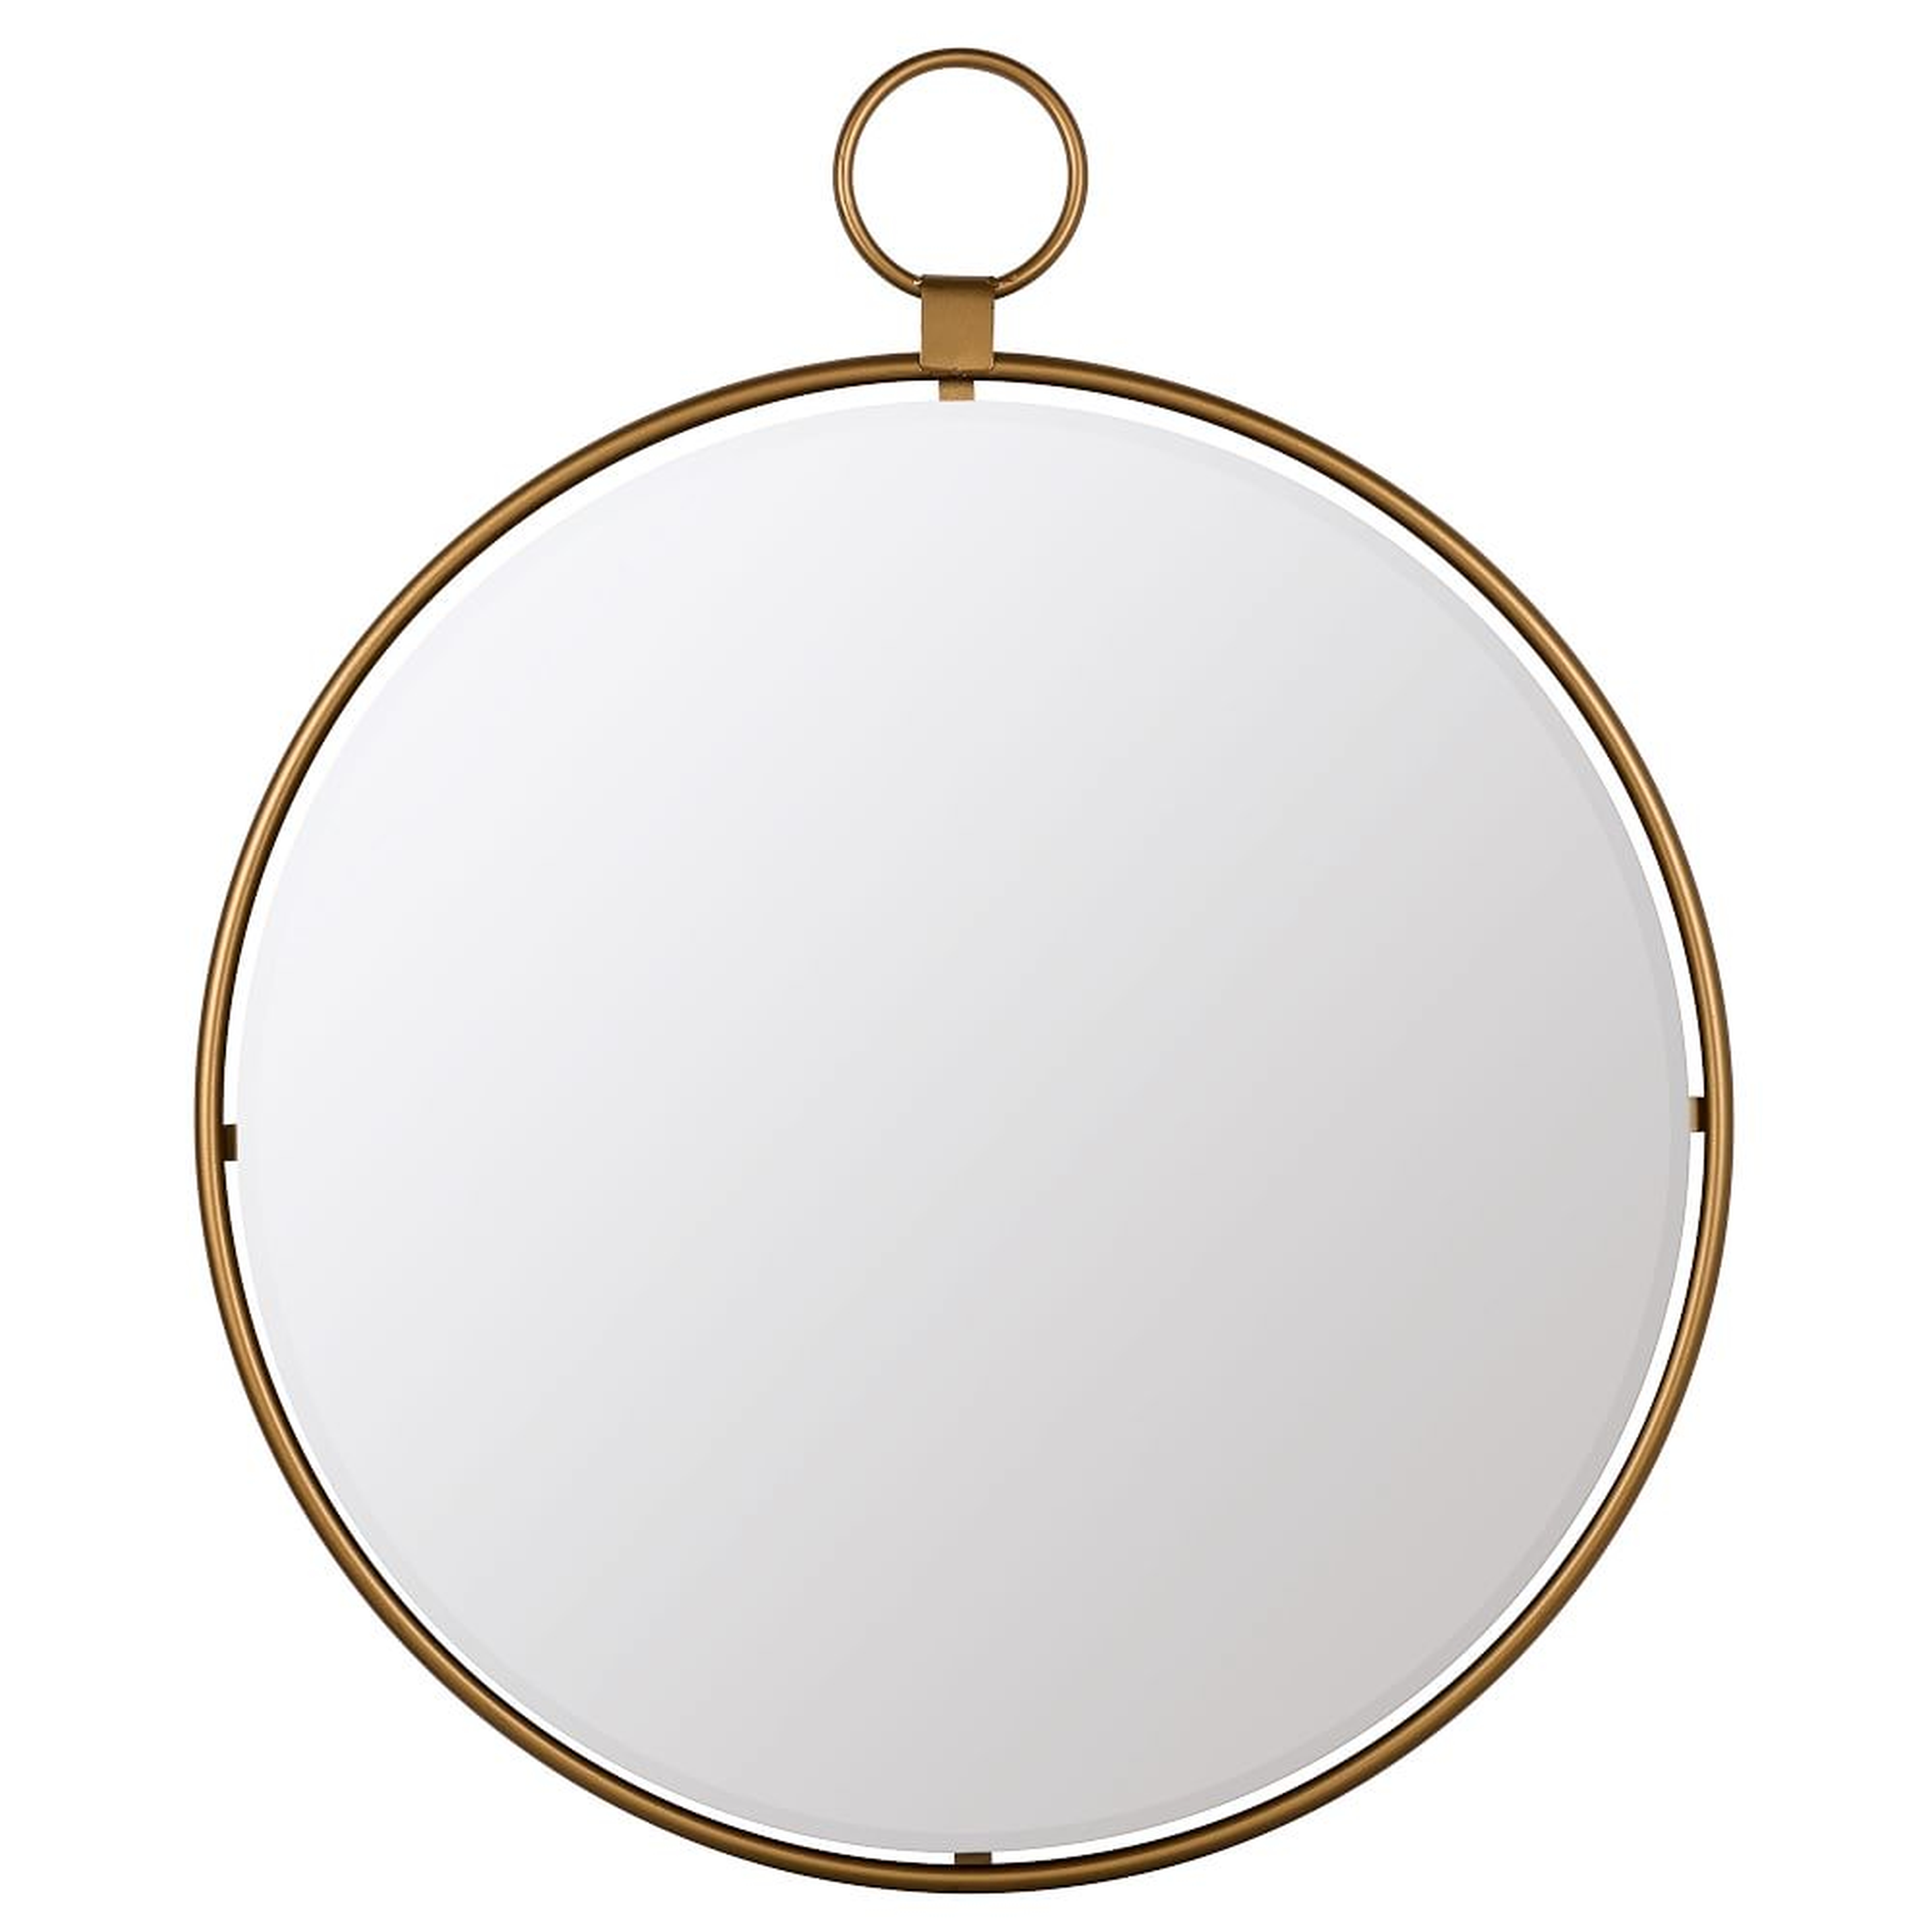 Round Loop Mirror, 25", Gold - West Elm